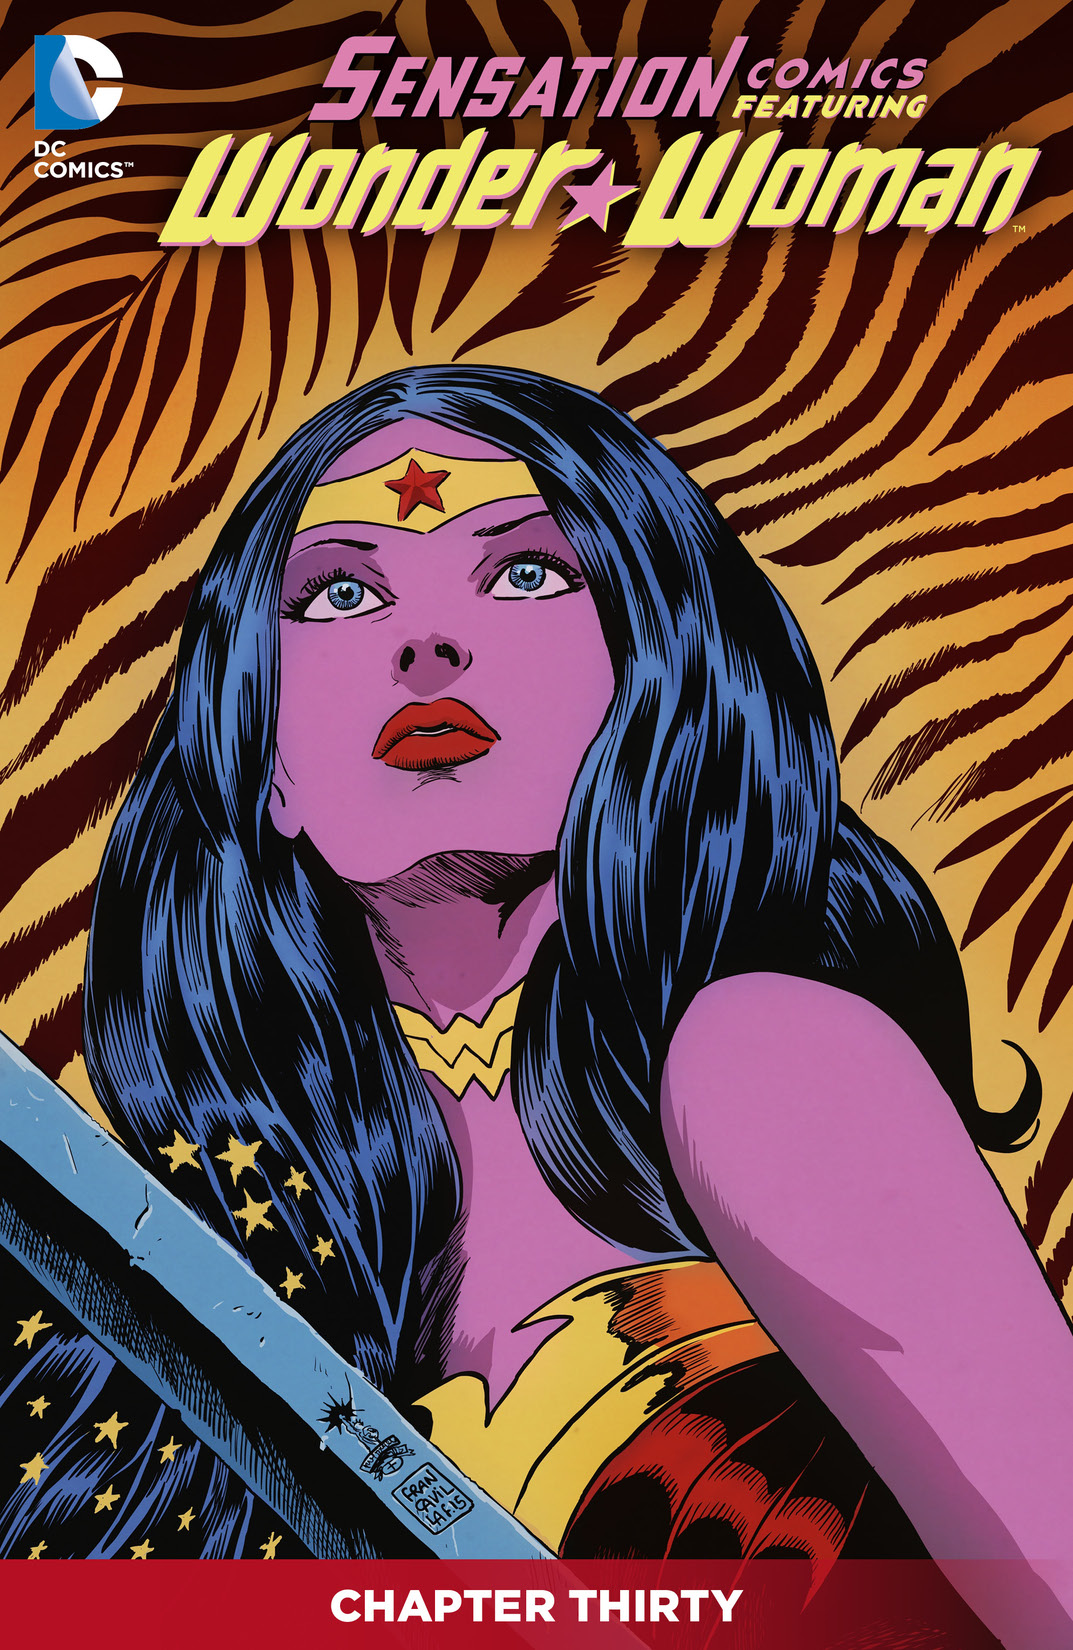 Sensation Comics Featuring Wonder Woman #30 preview images